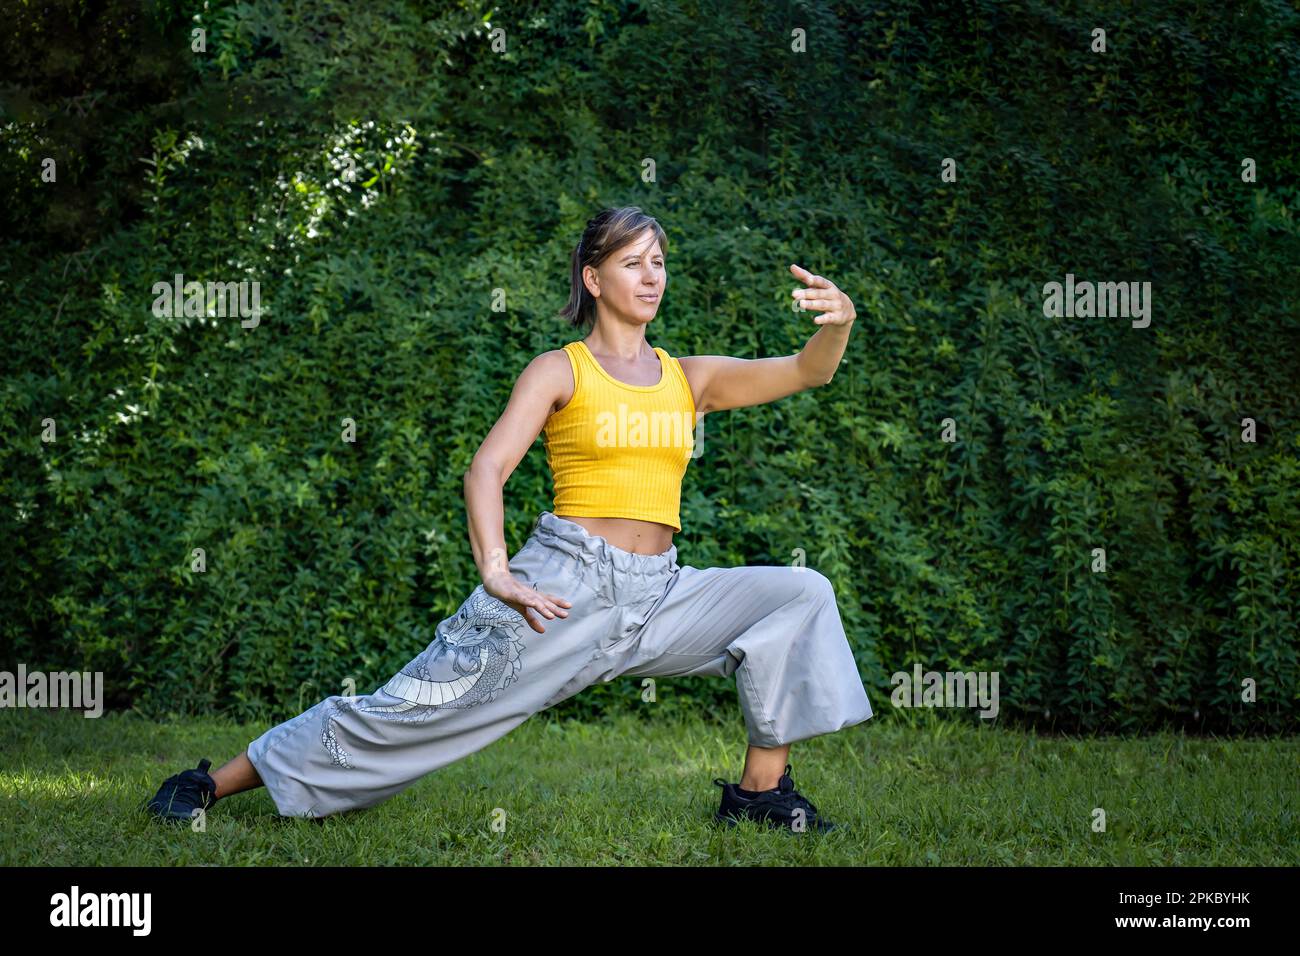 Femme pratiquant le tai chi à l'extérieur. Femme combine la pratique du Chi Kung et des arts martiaux chinois dans un cadre naturel pour améliorer sa pratique et h Banque D'Images